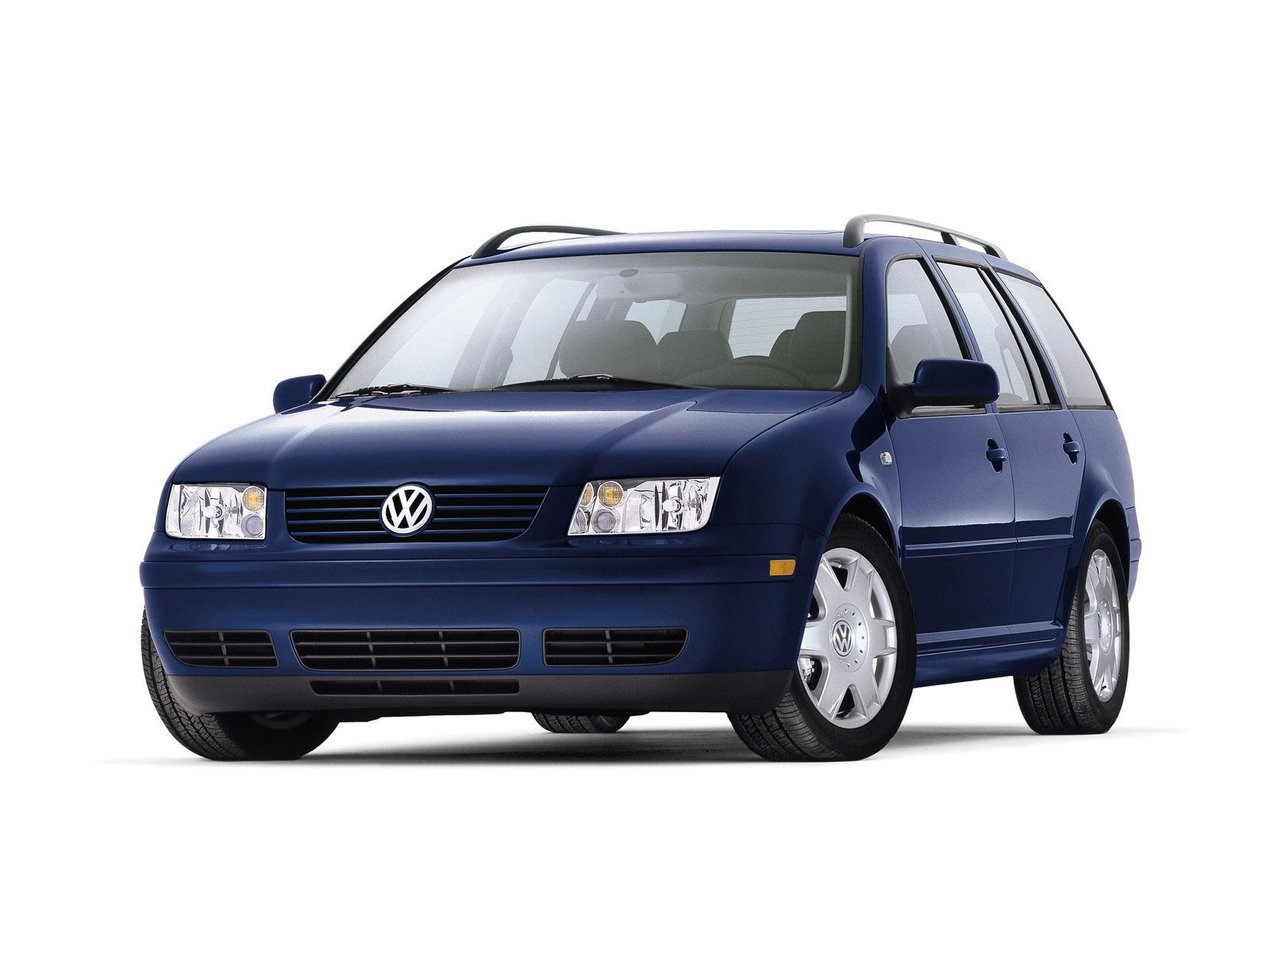 Расход газа шести комплектаций универсала пять дверей Volkswagen Jetta. Разница стоимости заправки газом и бензином. Автономный пробег до и после установки ГБО.